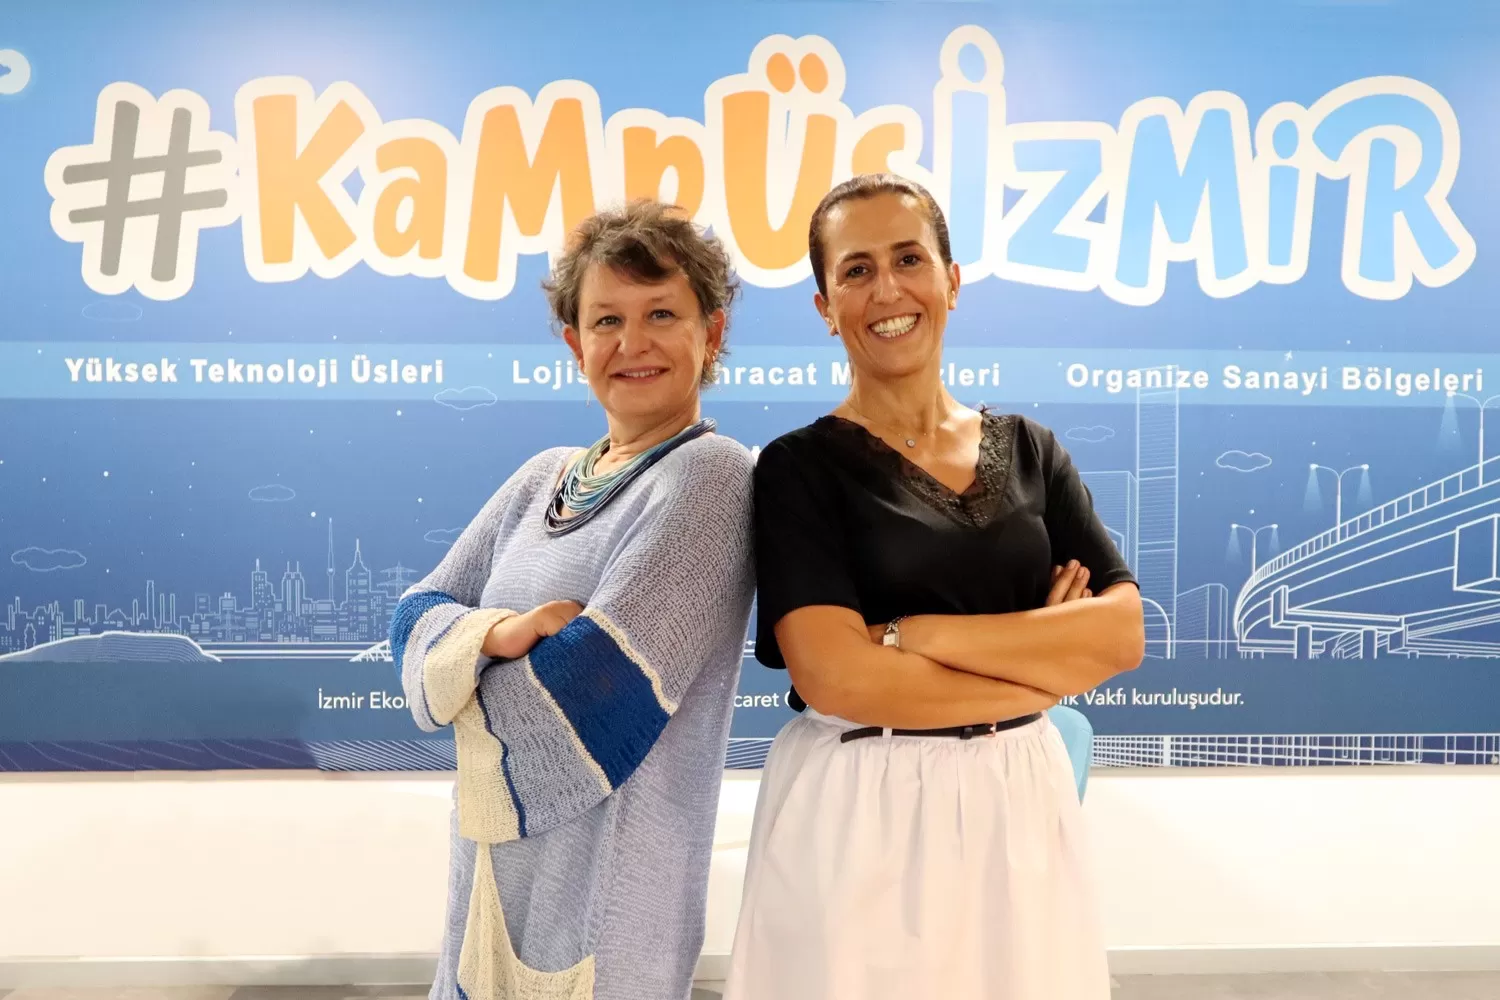 İzmir Ekonomi Üniversitesi'nin "JoinMe" projesi, Avrupa Birliği'nin hibe desteğiyle uluslararası eğitimde engellilik, kültürel ve ırksal farklılık sorunlarına ücretsiz dijital eğitim modülü sunuyor.